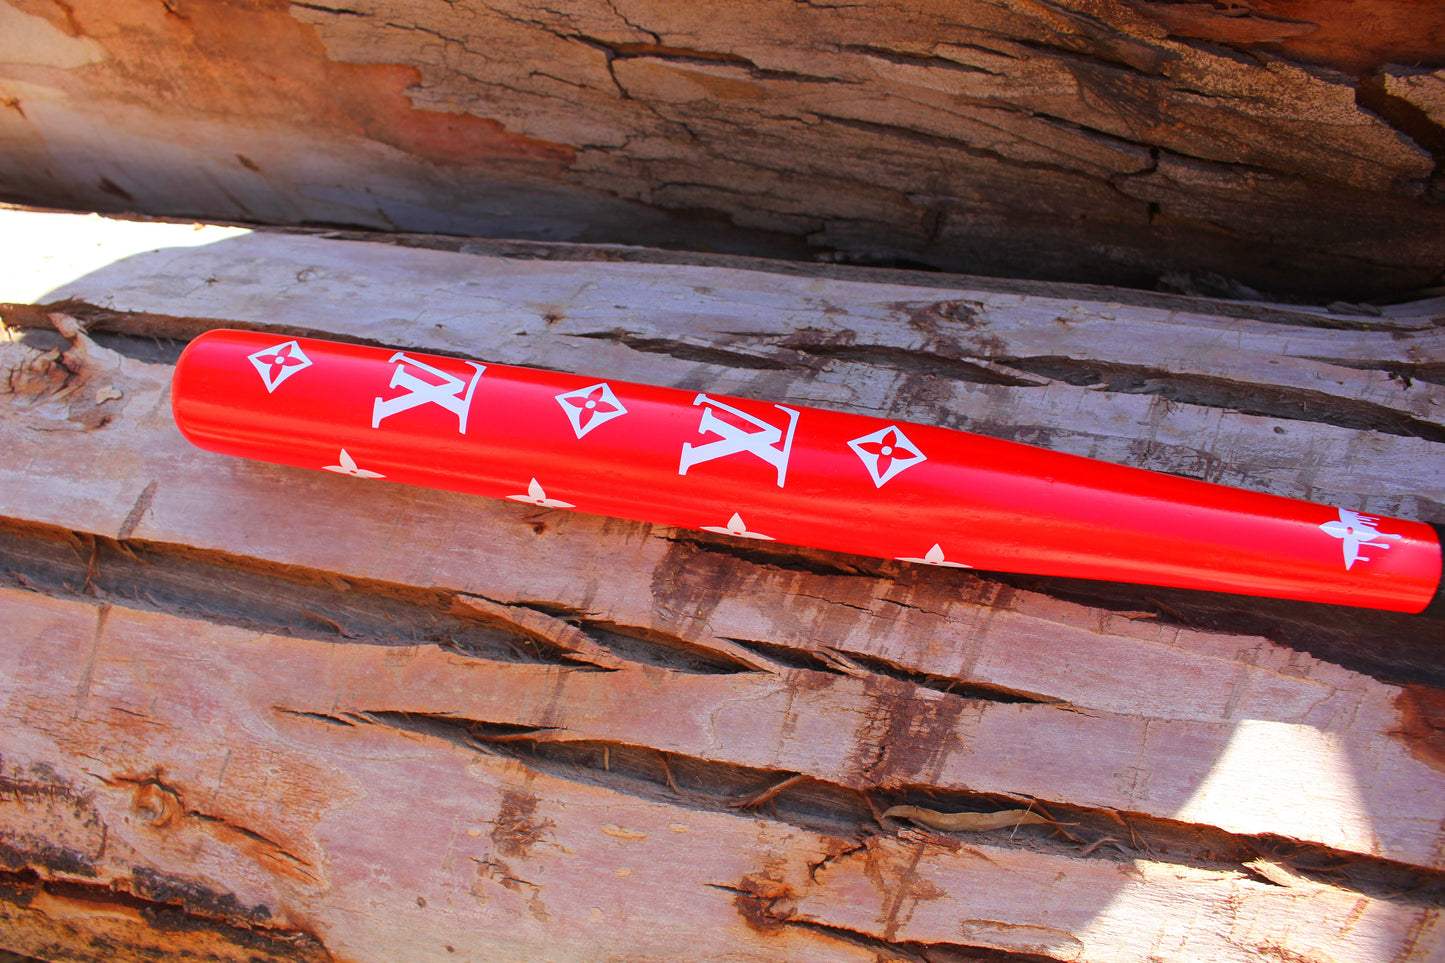 LV baseball bat